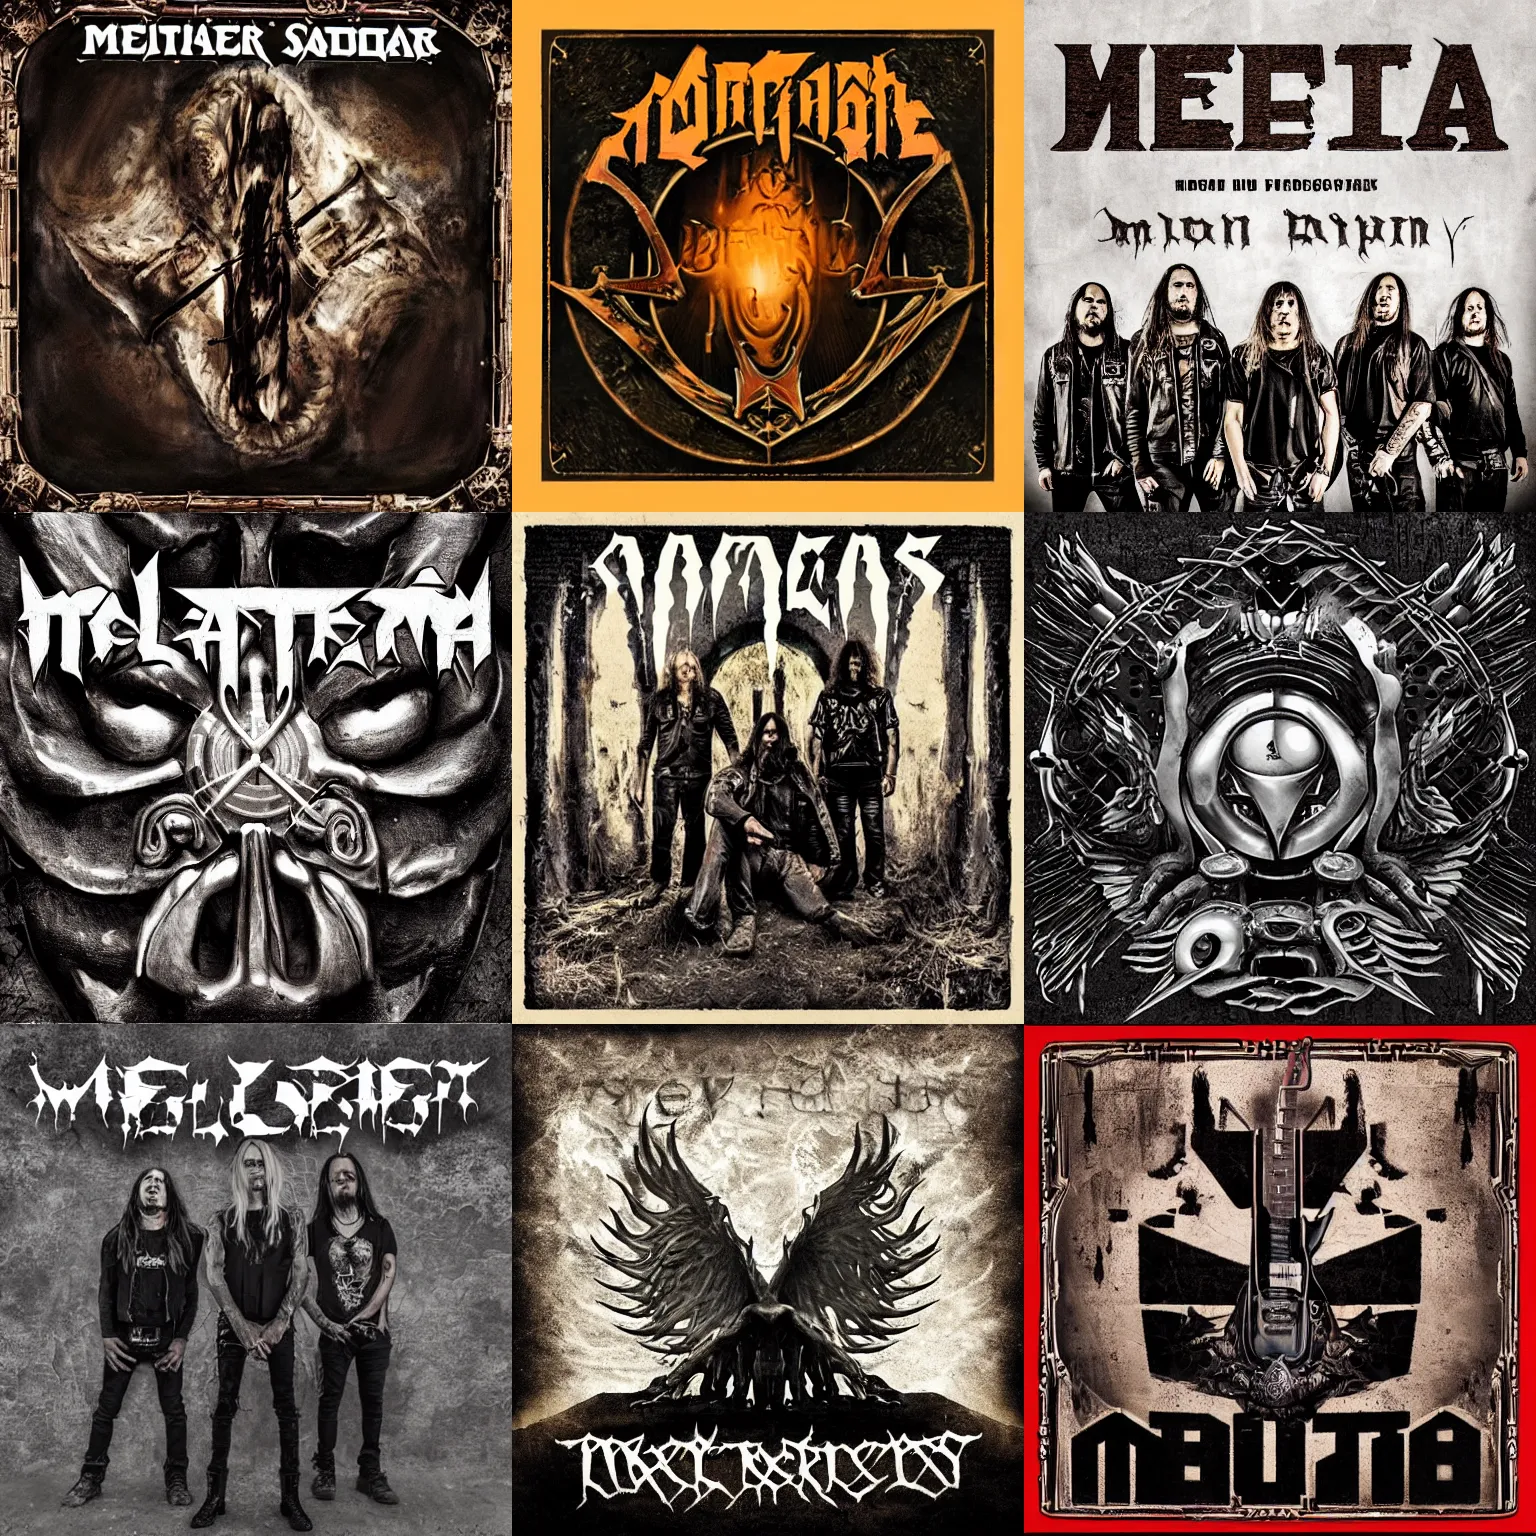 Prompt: metal album cover